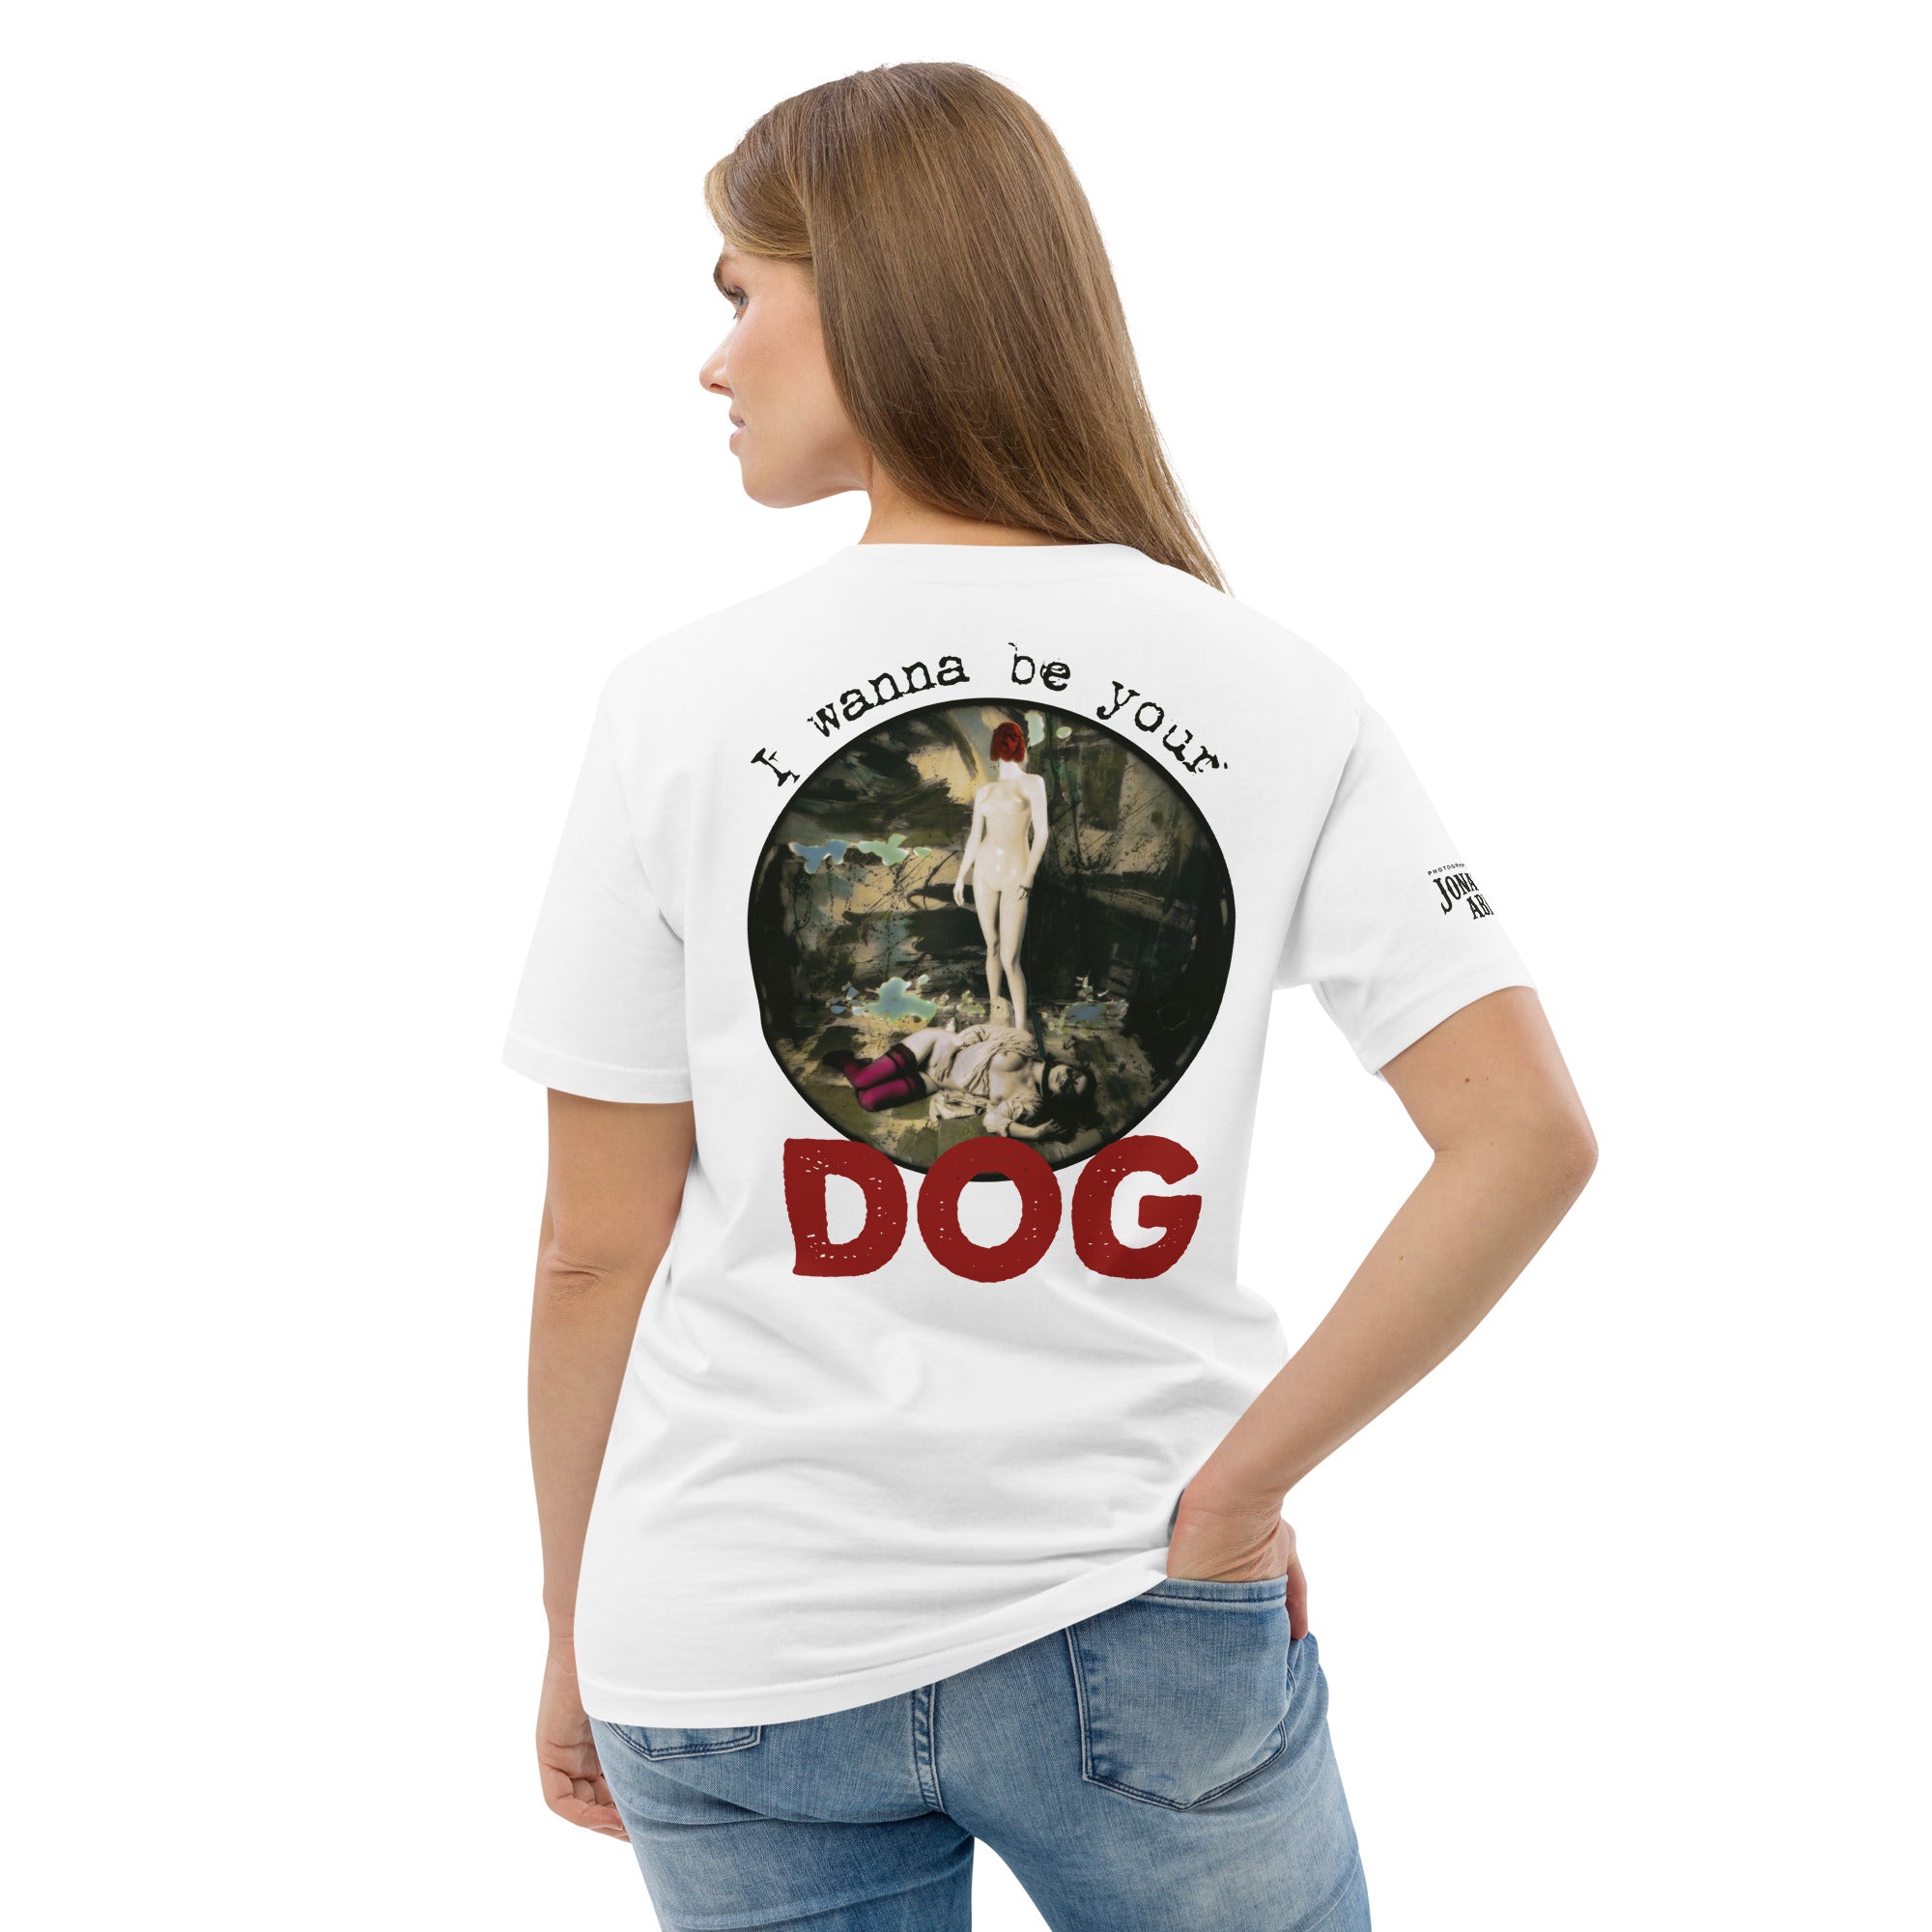 Jonathan abbou - T-shirt unisexe en coton biologique - Dog